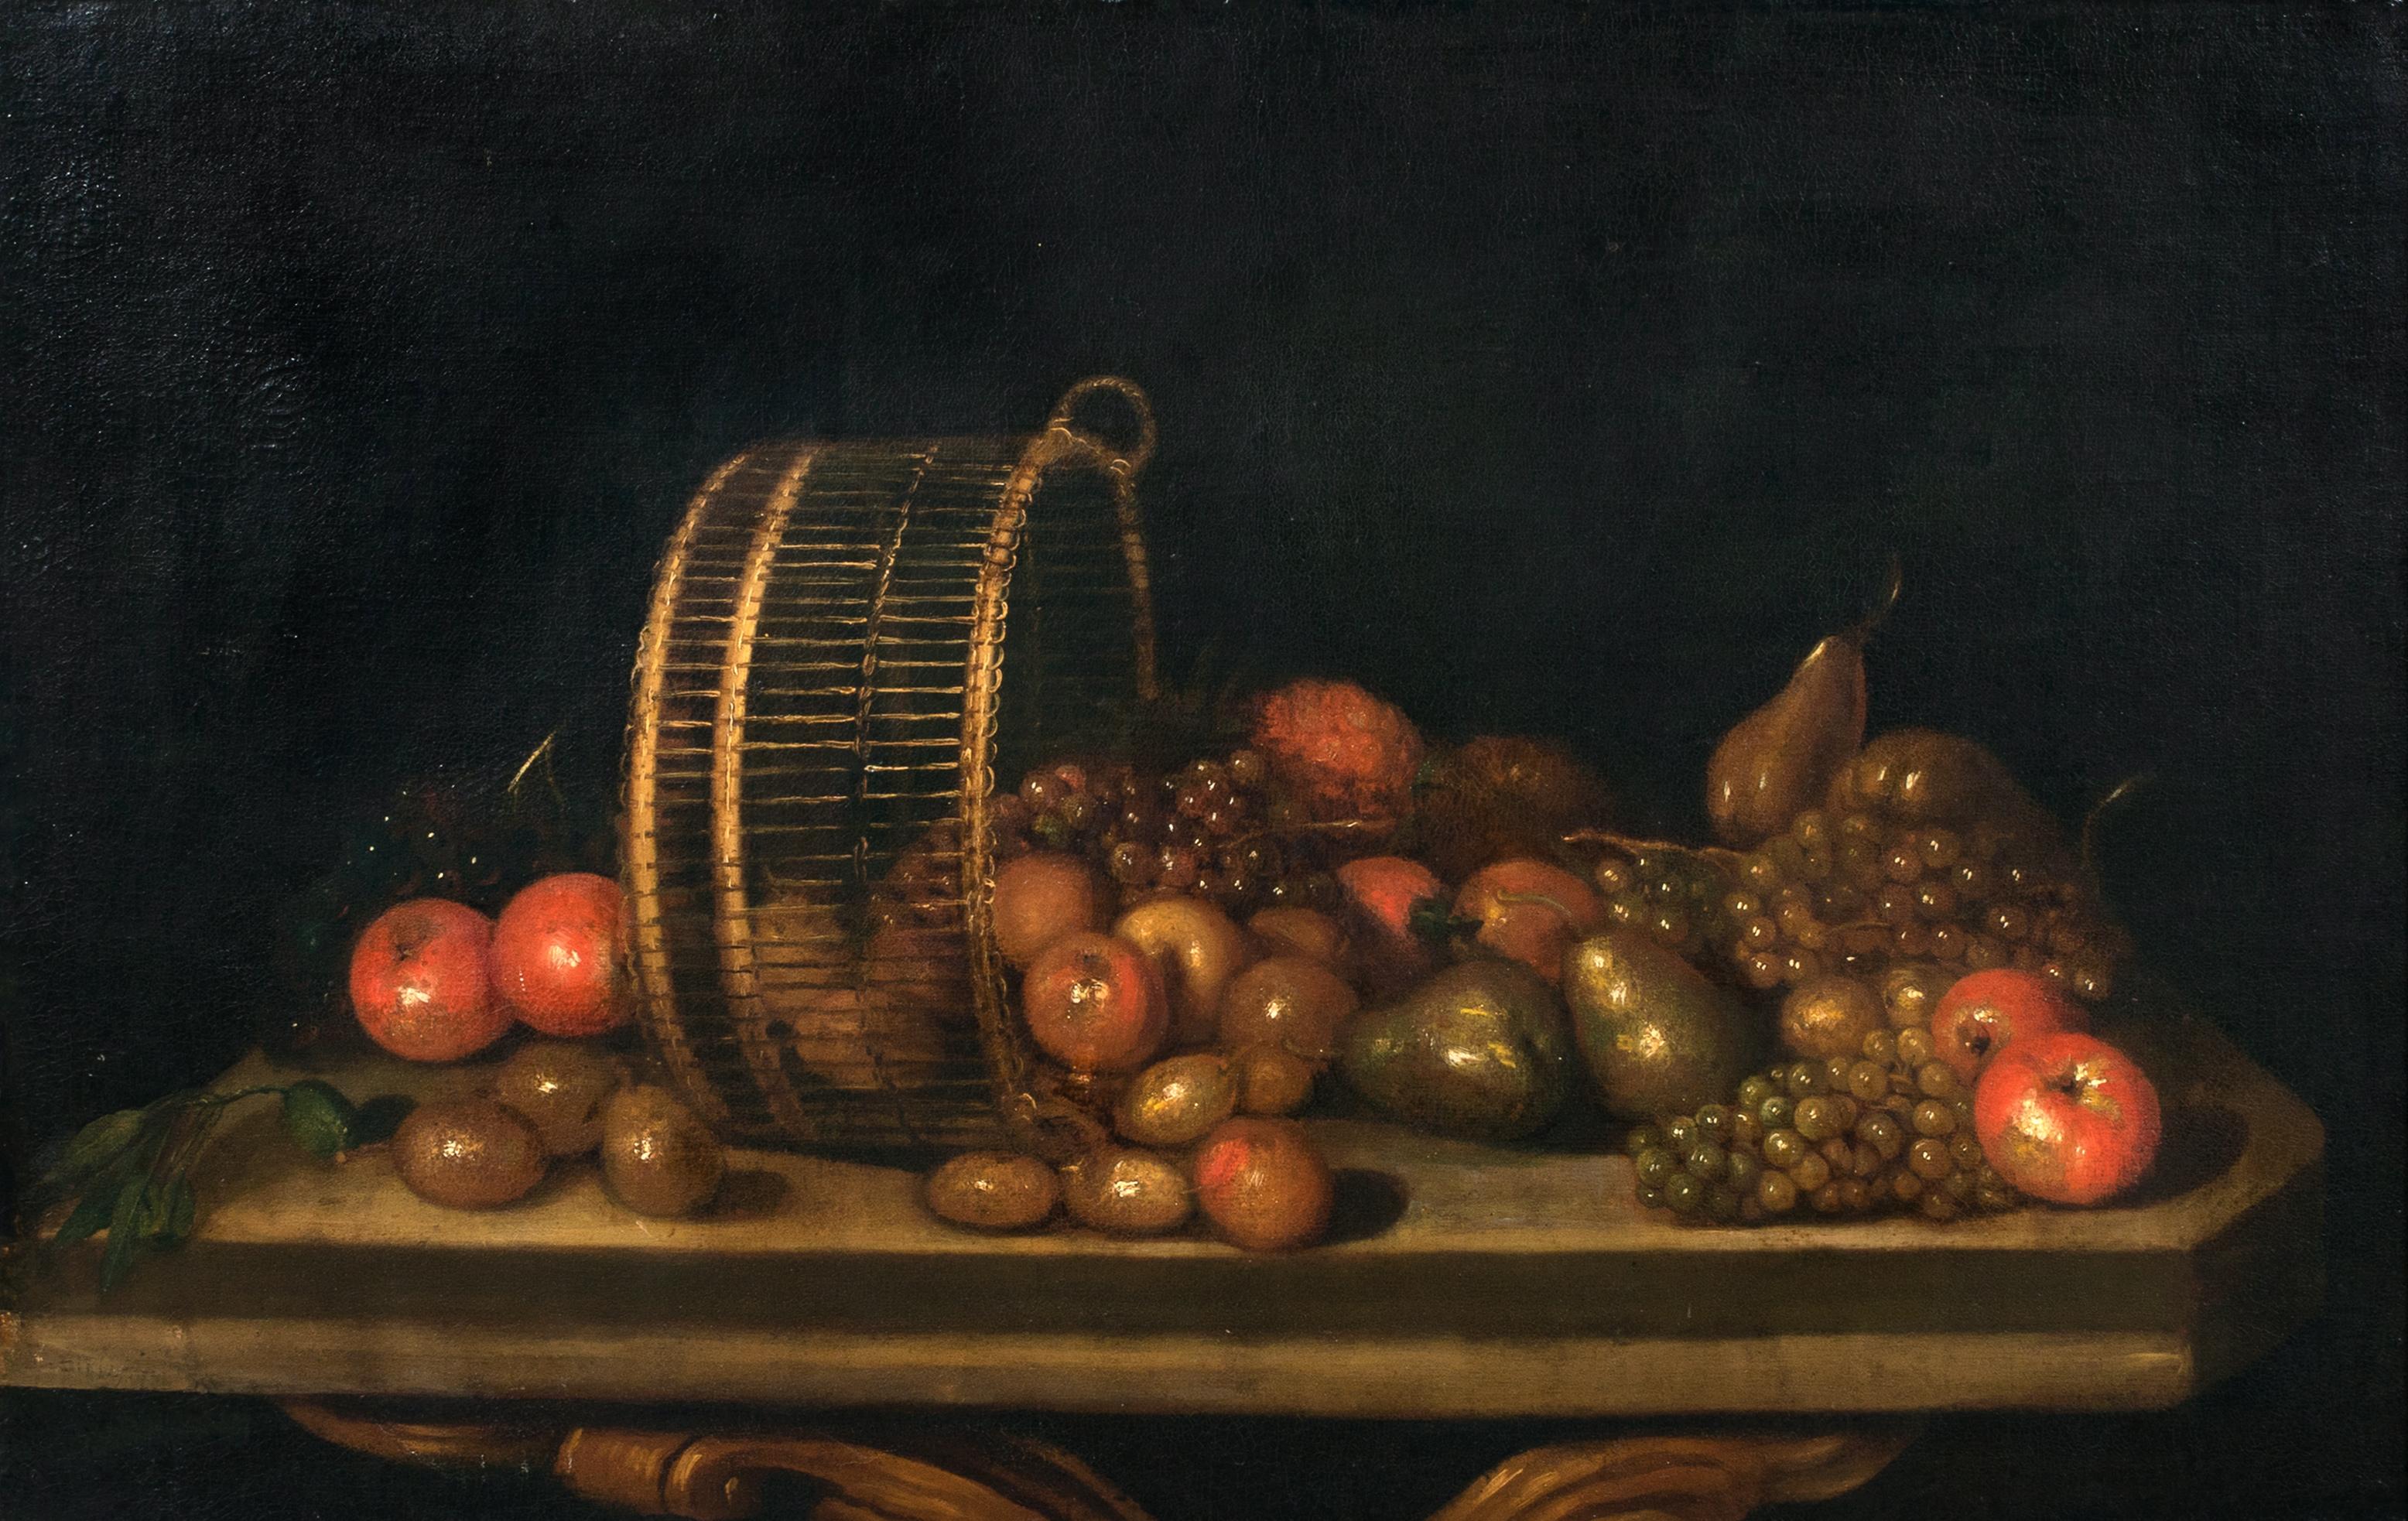 Stilleben mit Birnen, Äpfeln und Trauben in einem umgedrehten Korb, 17. Jahrhundert 

Kreis von BARTHOLOMEUS ASSTEYN (1607-1667)

Großes holländisches Stillleben des 17. Jahrhunderts mit Äpfeln, Birnen und Trauben in einem umgedrehten Korb auf einem